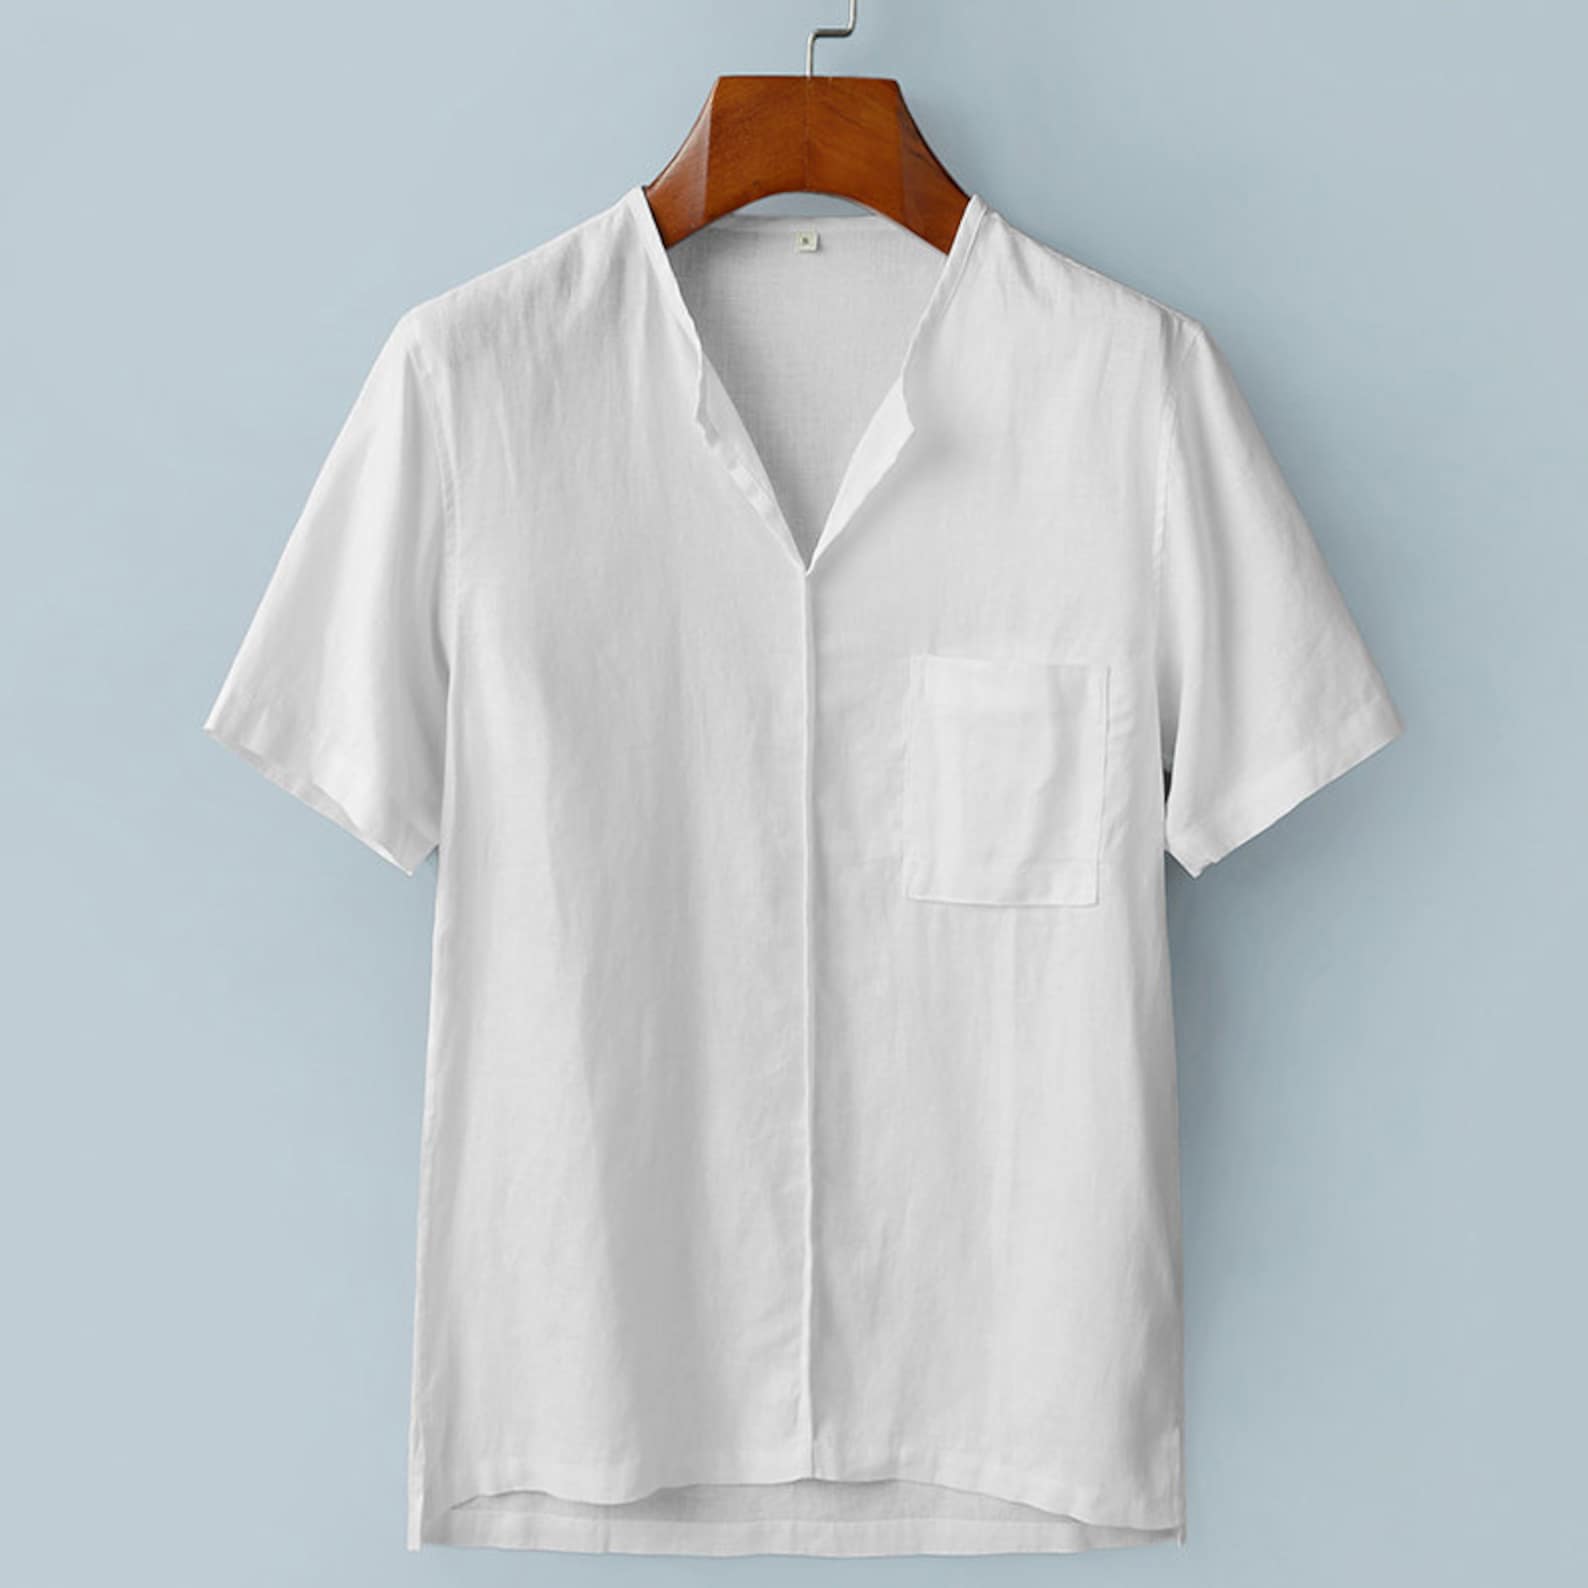 Man 100% linen t-shirt linen top Men's loose casual linen | Etsy